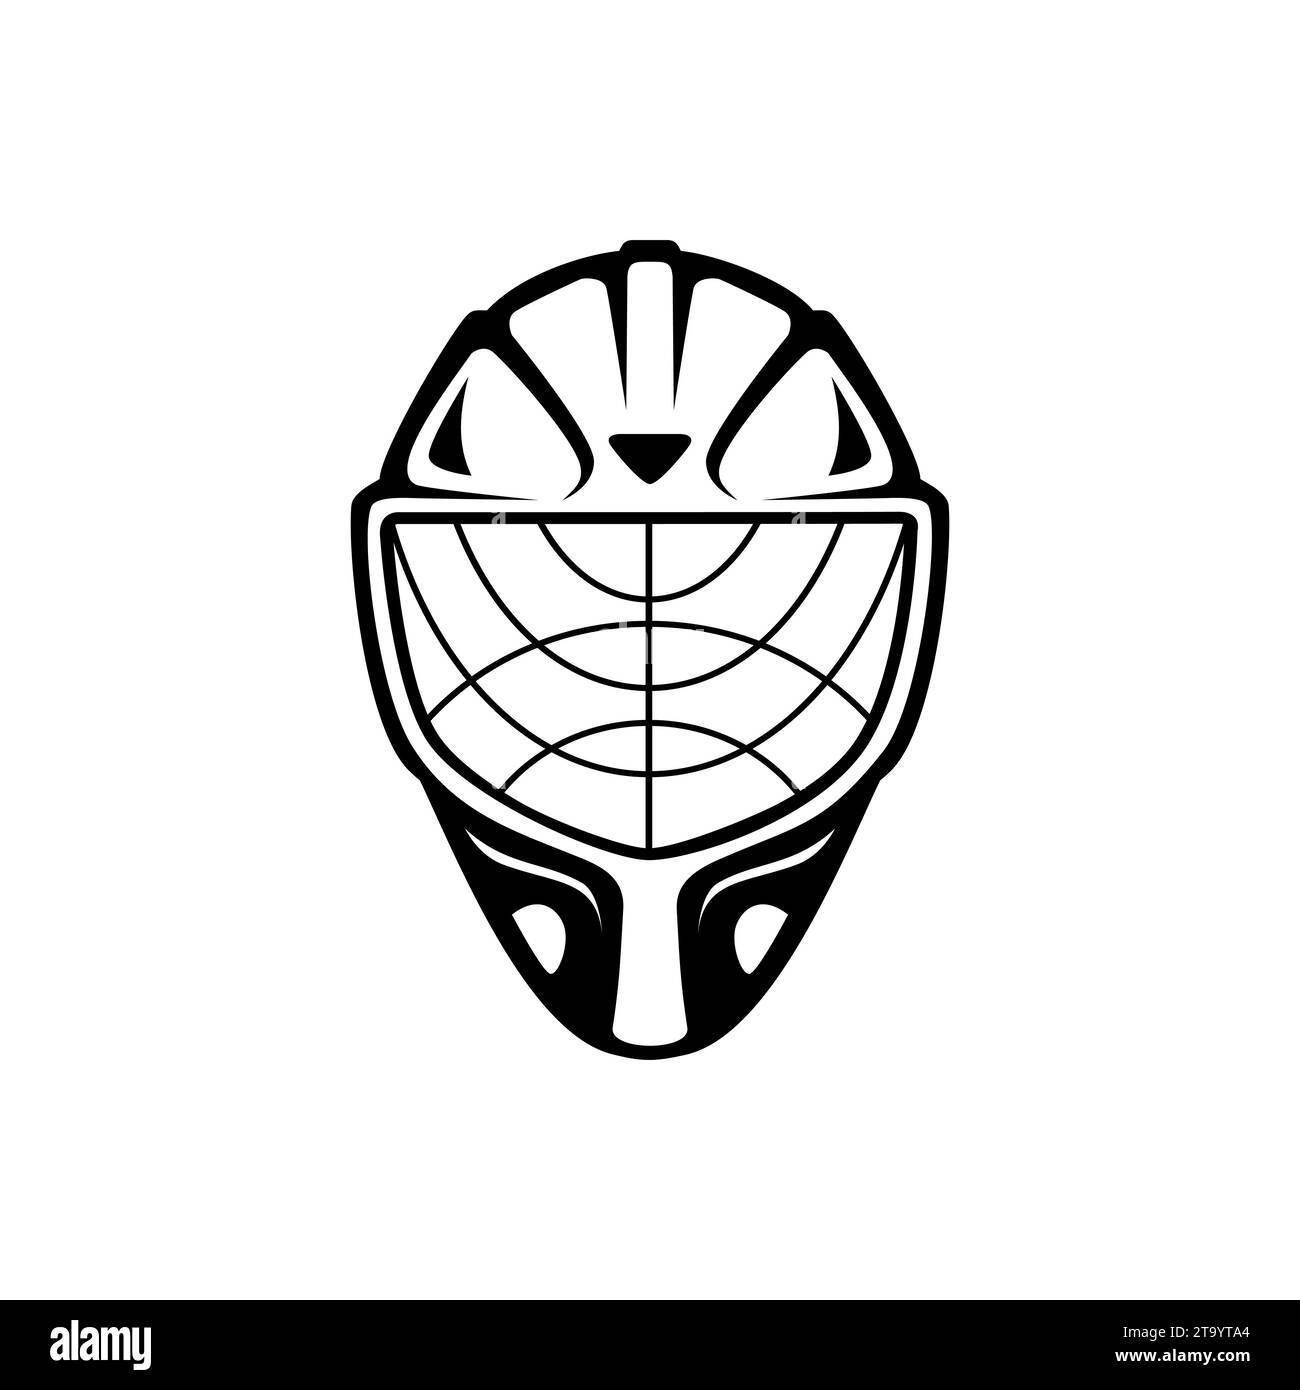 Silhouette des Eishockeymasken-Symbols Stock Vektor